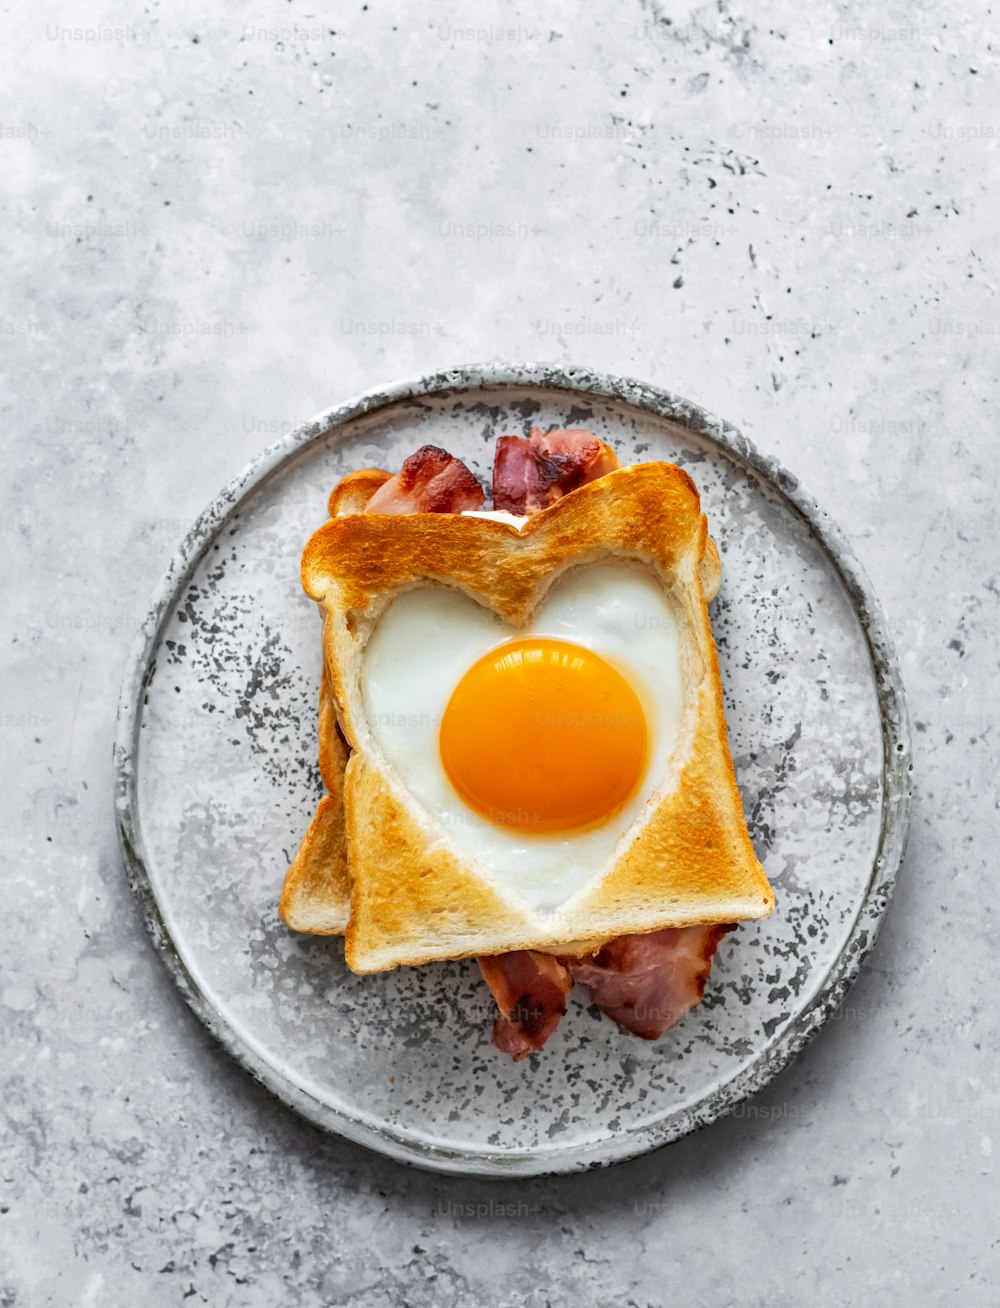 uma torrada em forma de coração com bacon e um ovo por cima